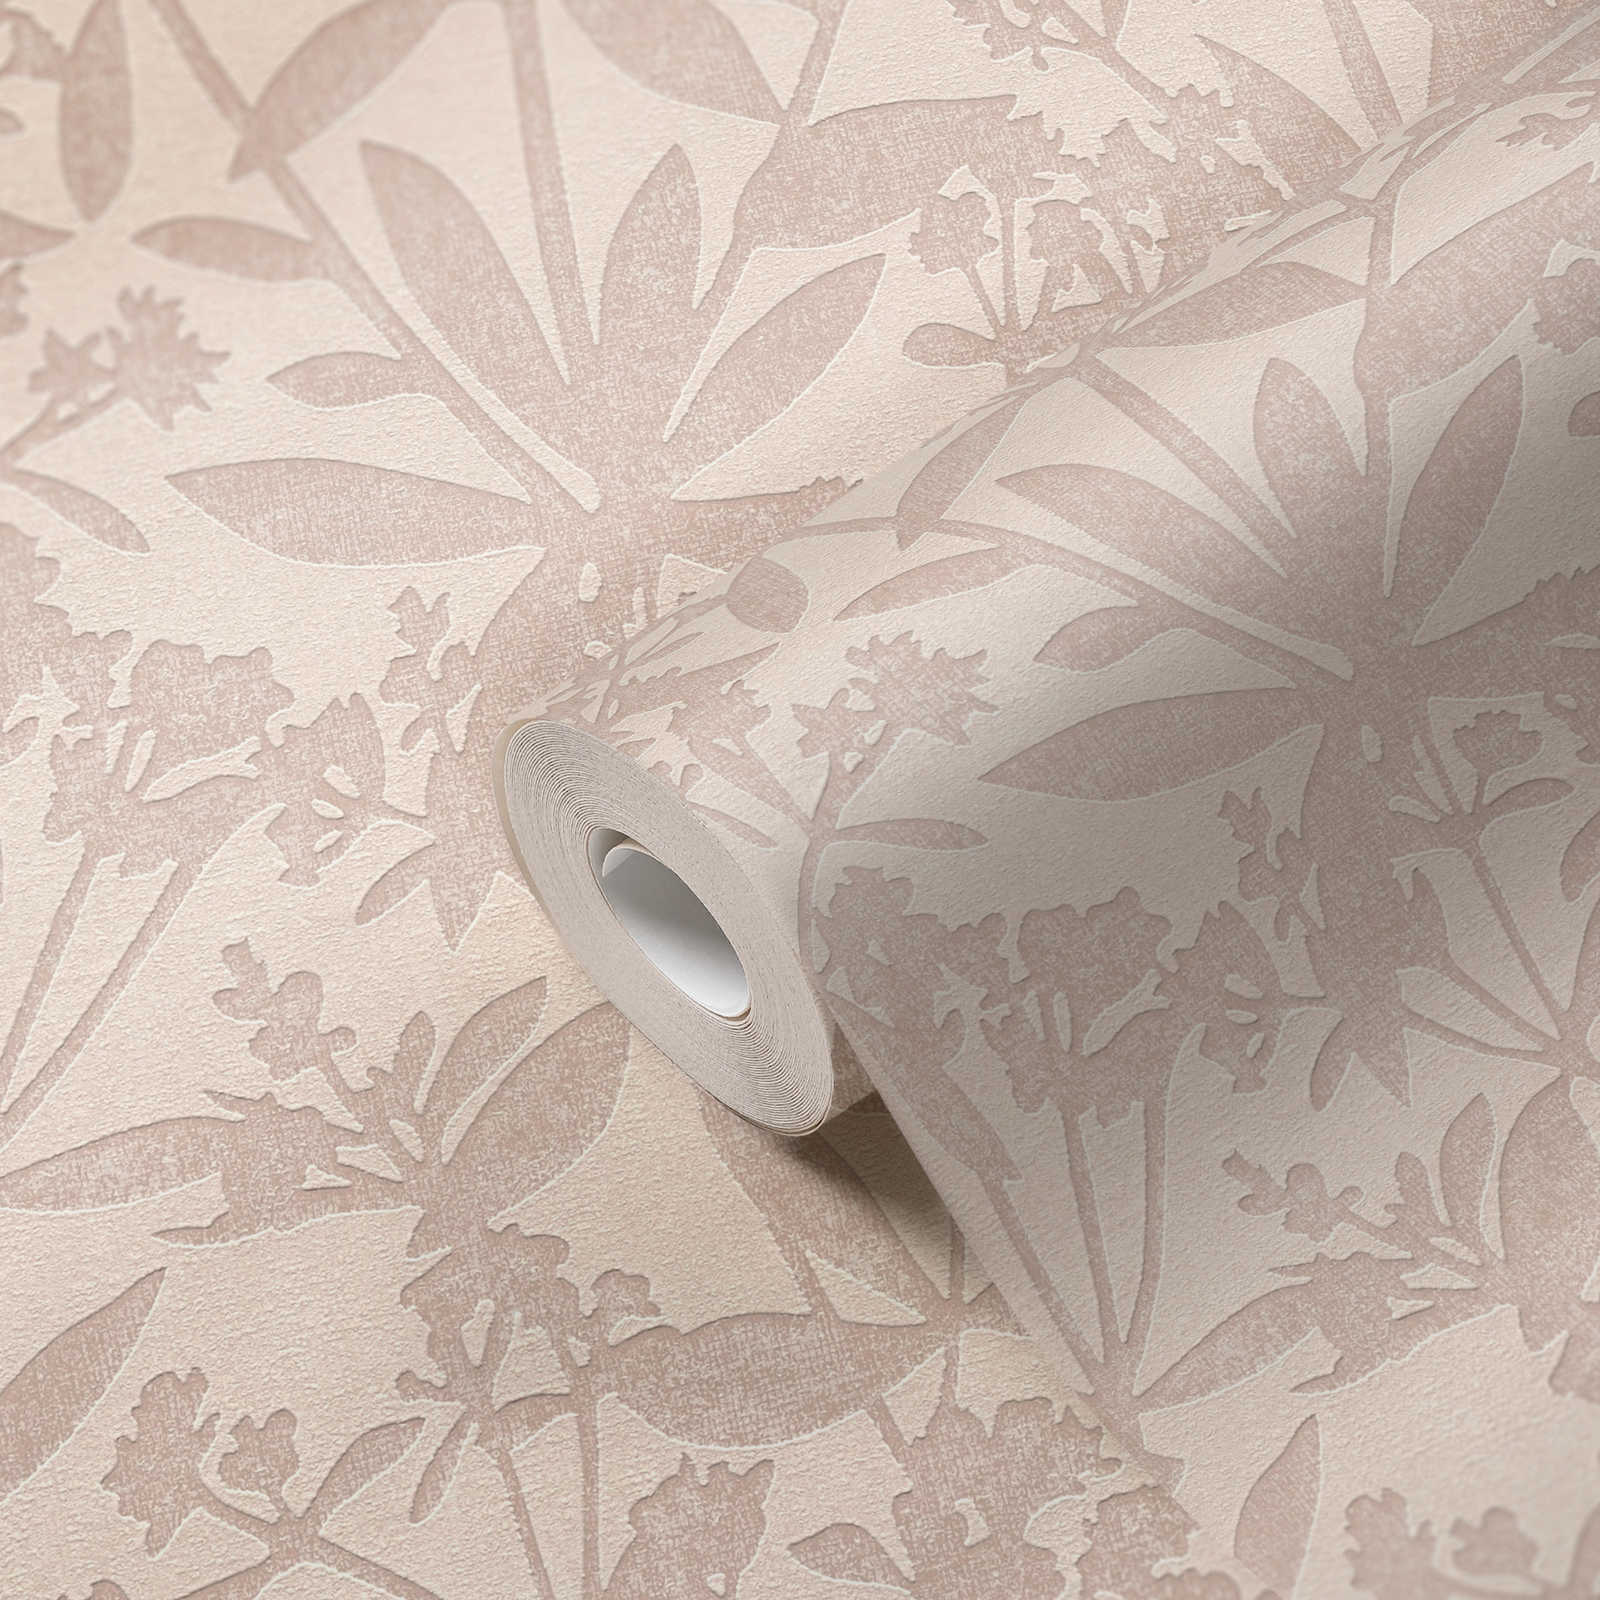             Papel pintado no tejido de flores y hojas - crema, beige
        